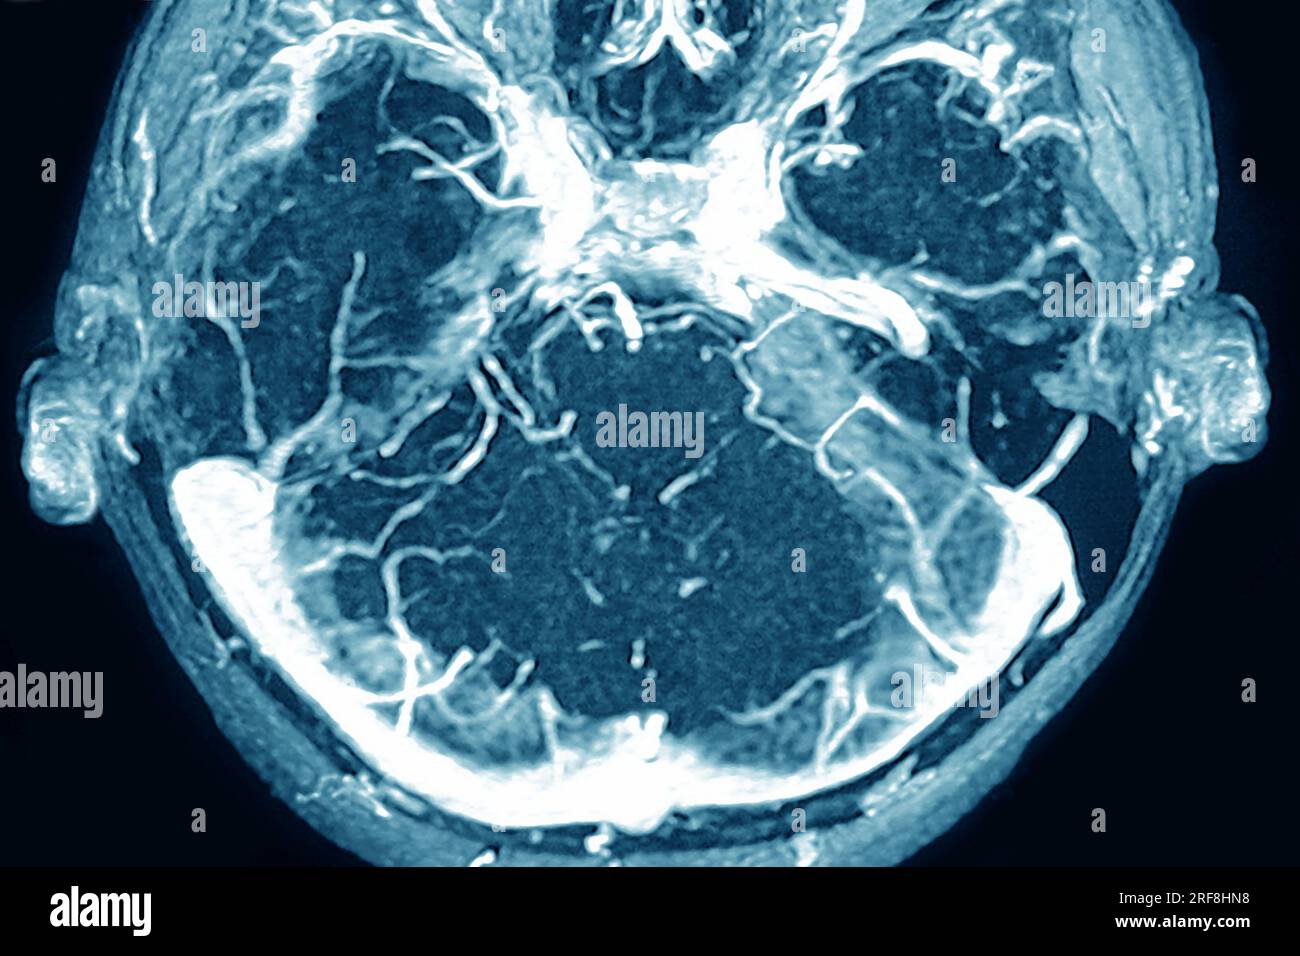 Thrombose des sinus veineux cérébraux de la dure-mère, visualisée par angiographie cranienne en IRM. Banque D'Images